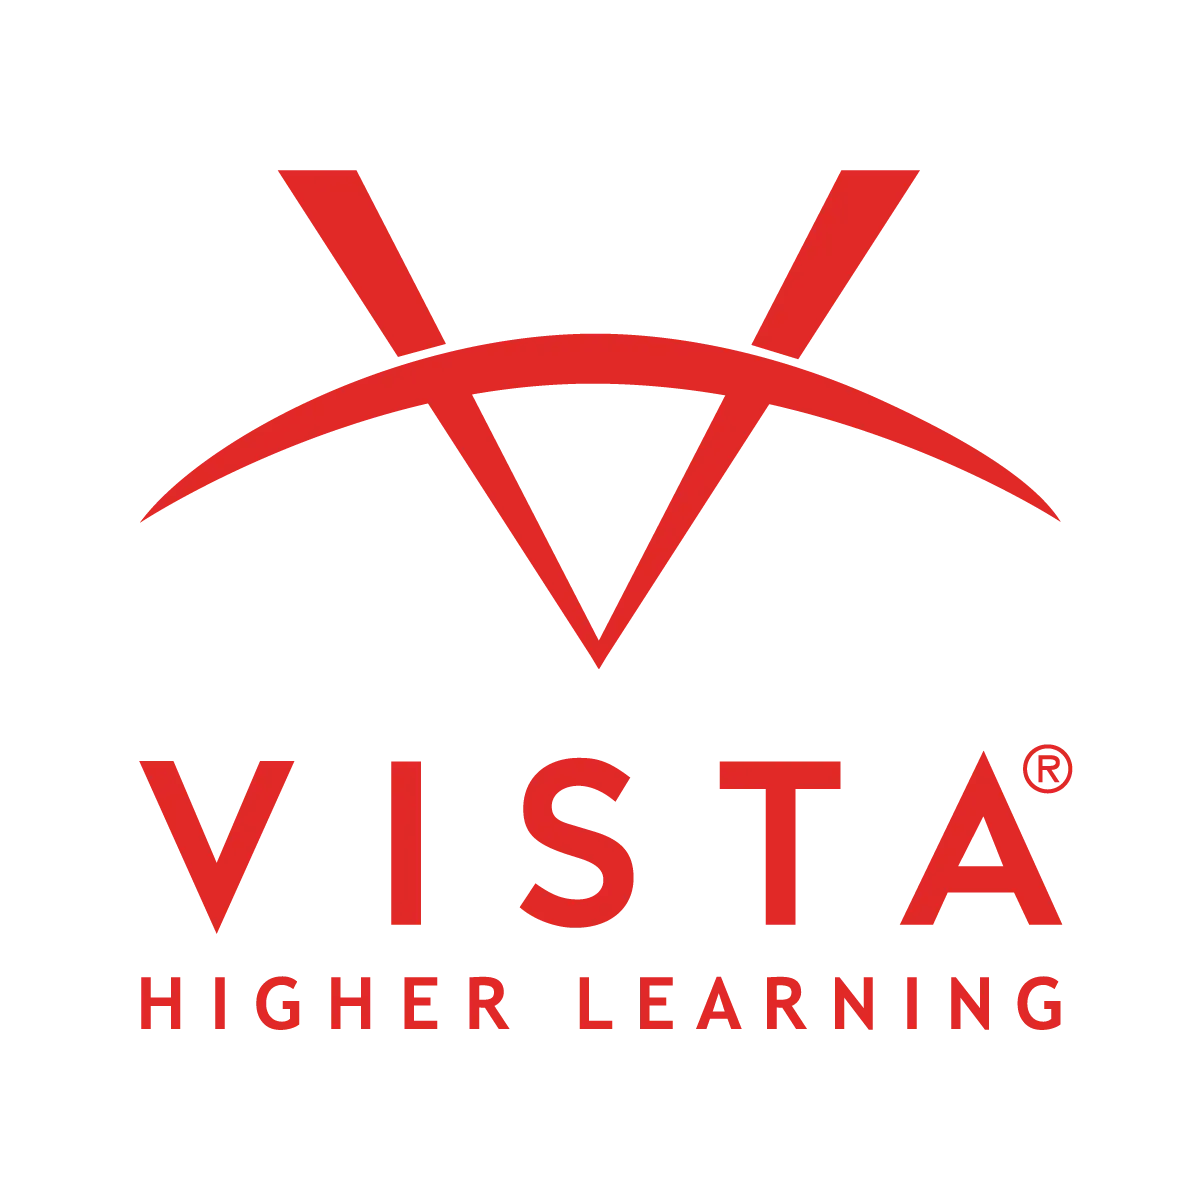 Vista Higher Education Logo